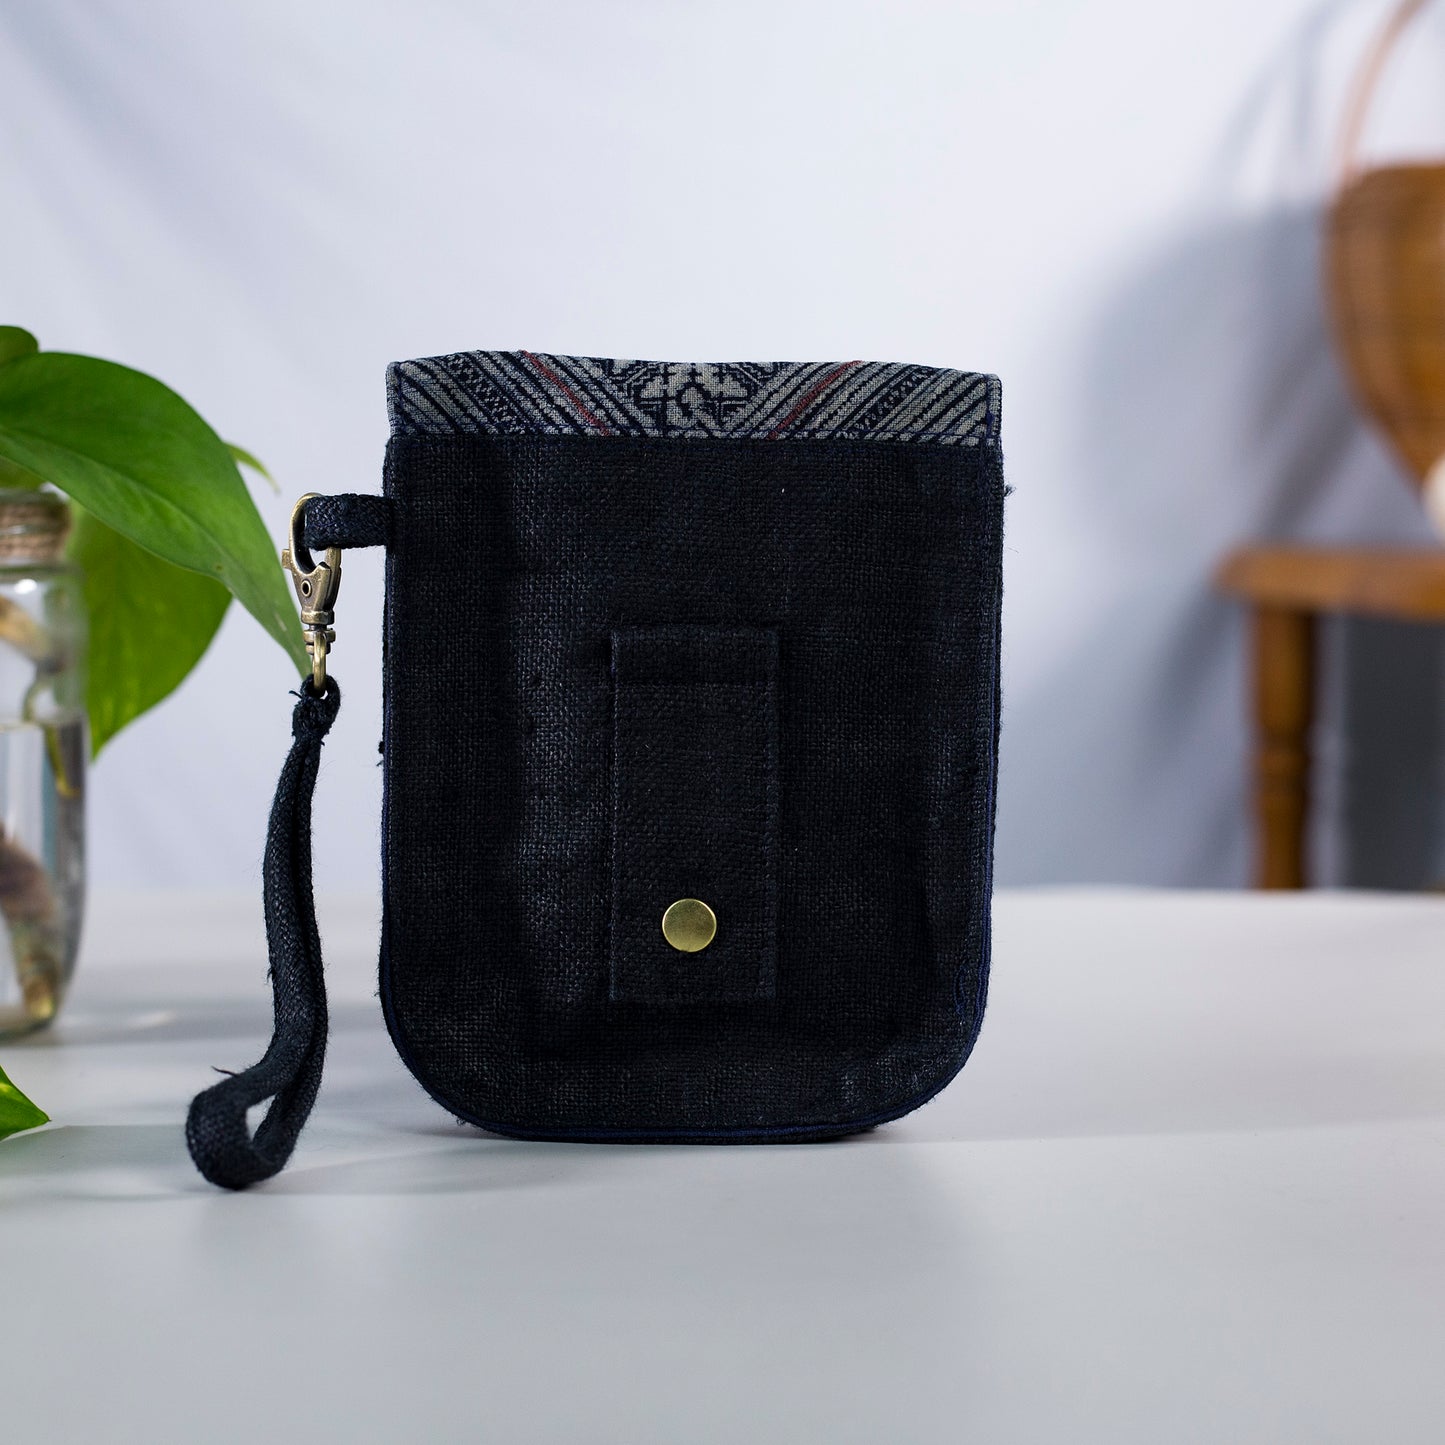 Flip phone belt bag, wrist bag option, natural hemp in BLACK color